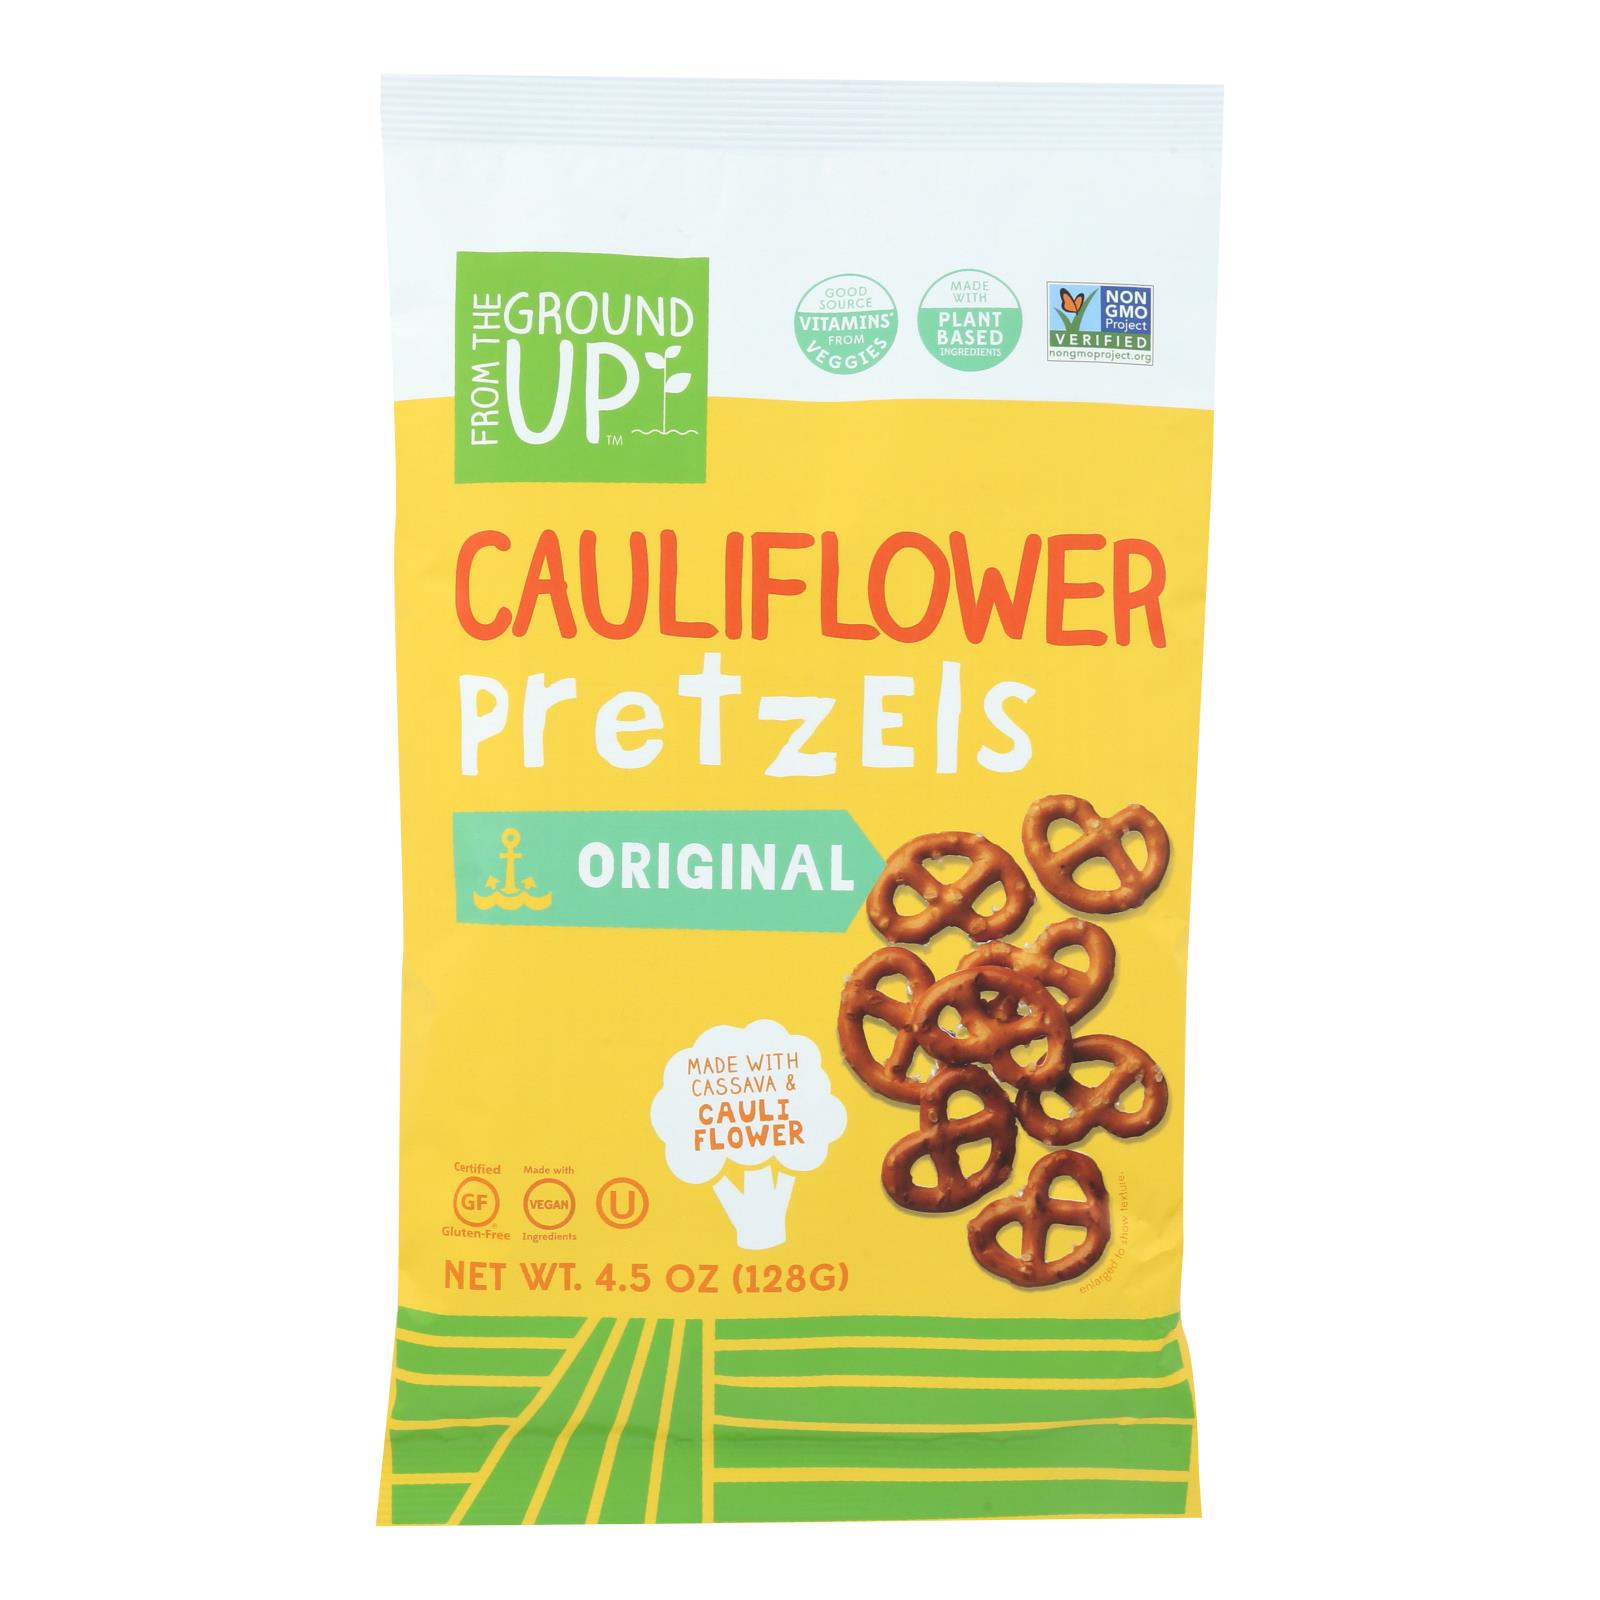 From The Ground Up - Cauliflower Pretzel Sticks - Twist - 12개 묶음상품 - 4.5 oz.